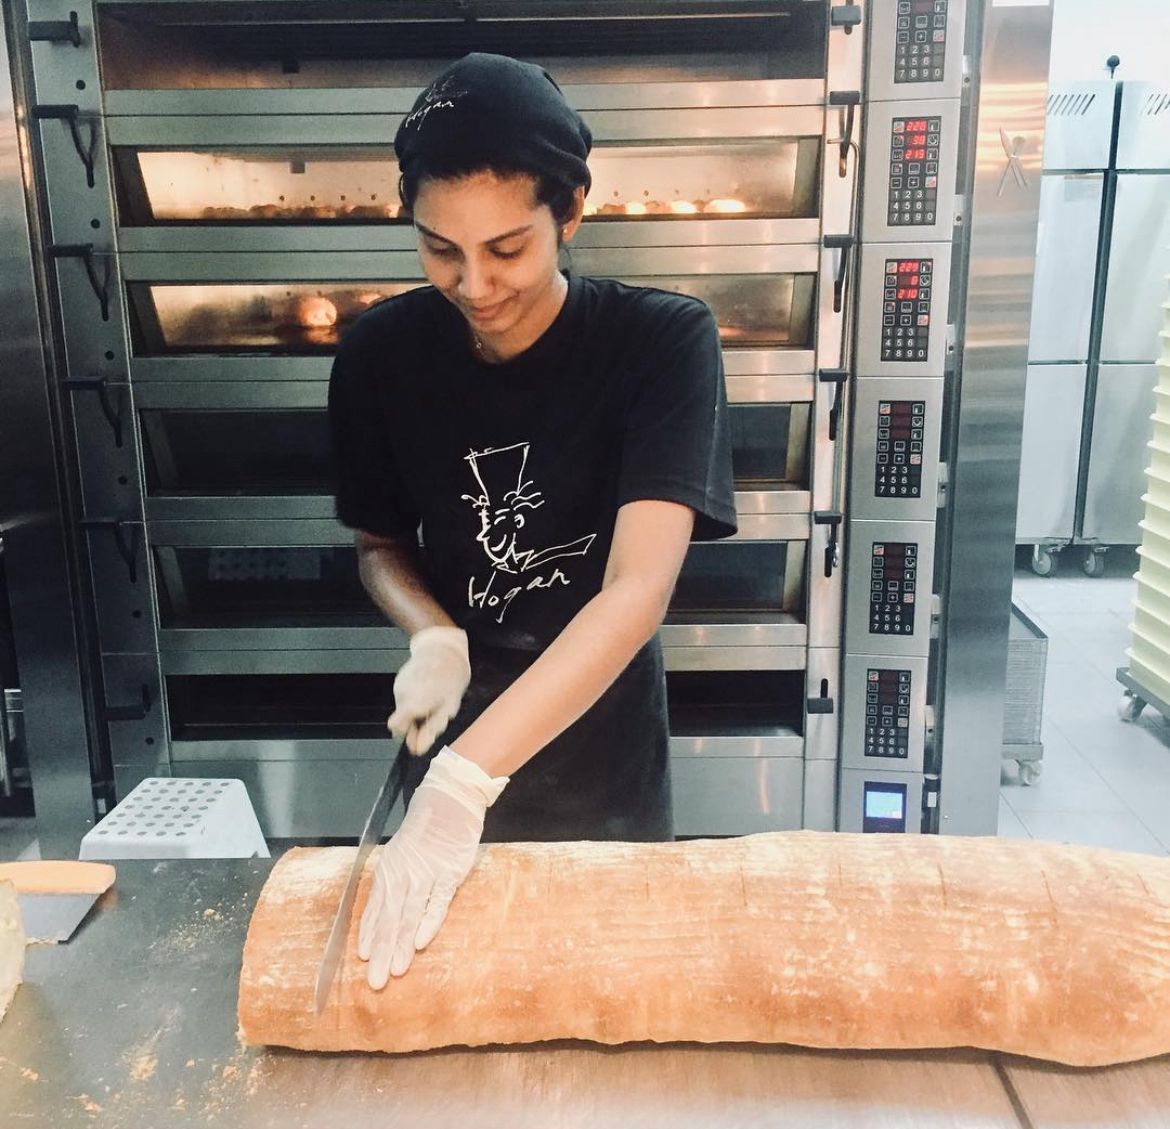 Msian girl cutting bread